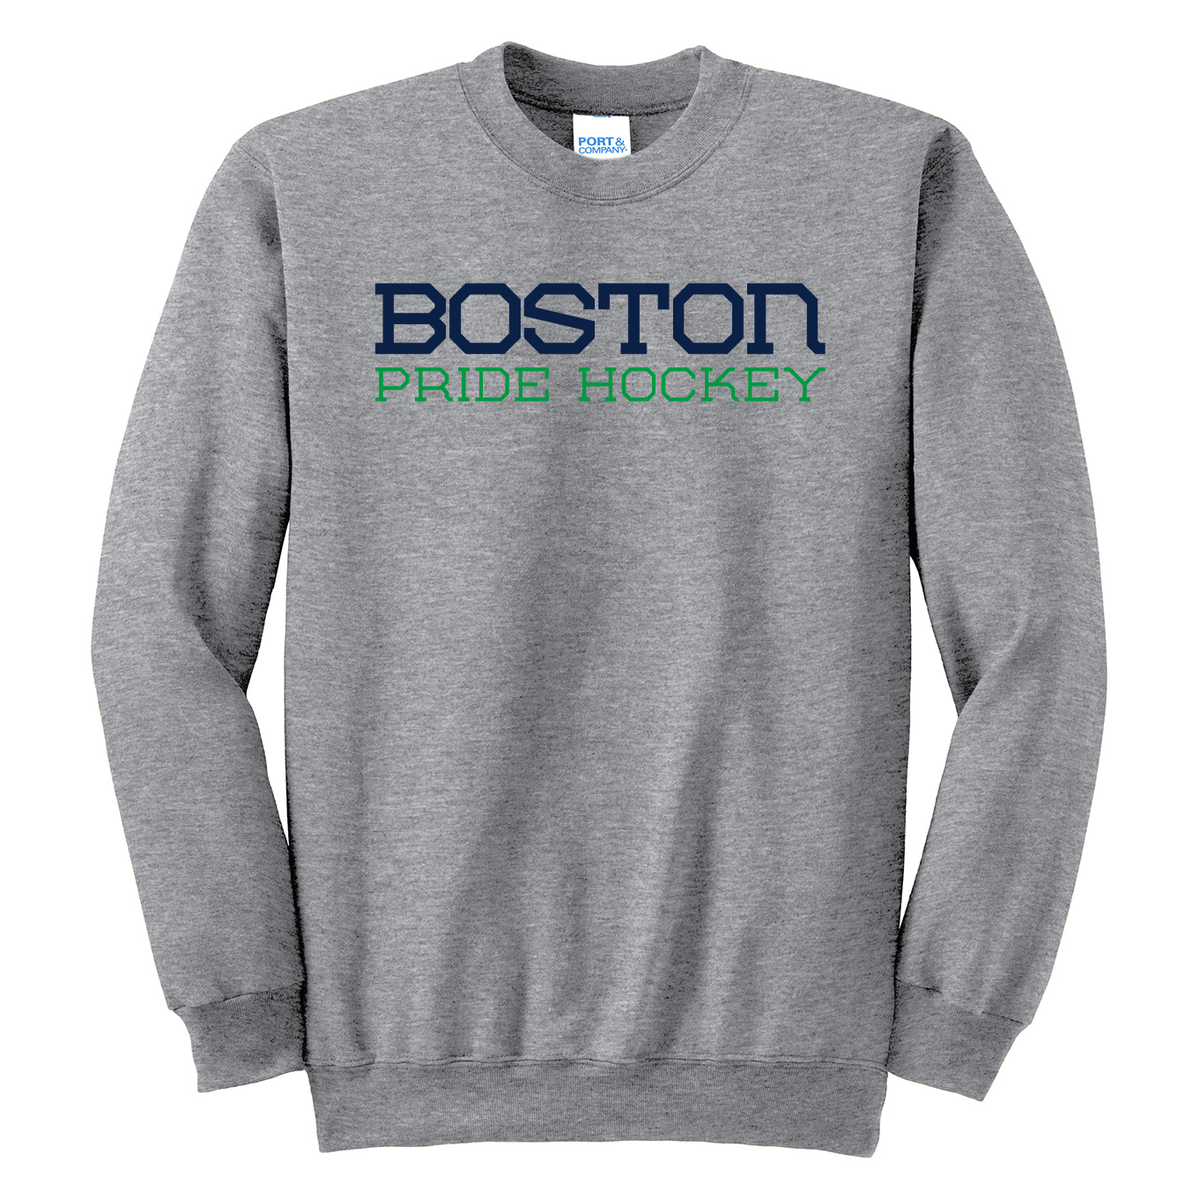 Boston Pride Hockey Crew Neck Sweater